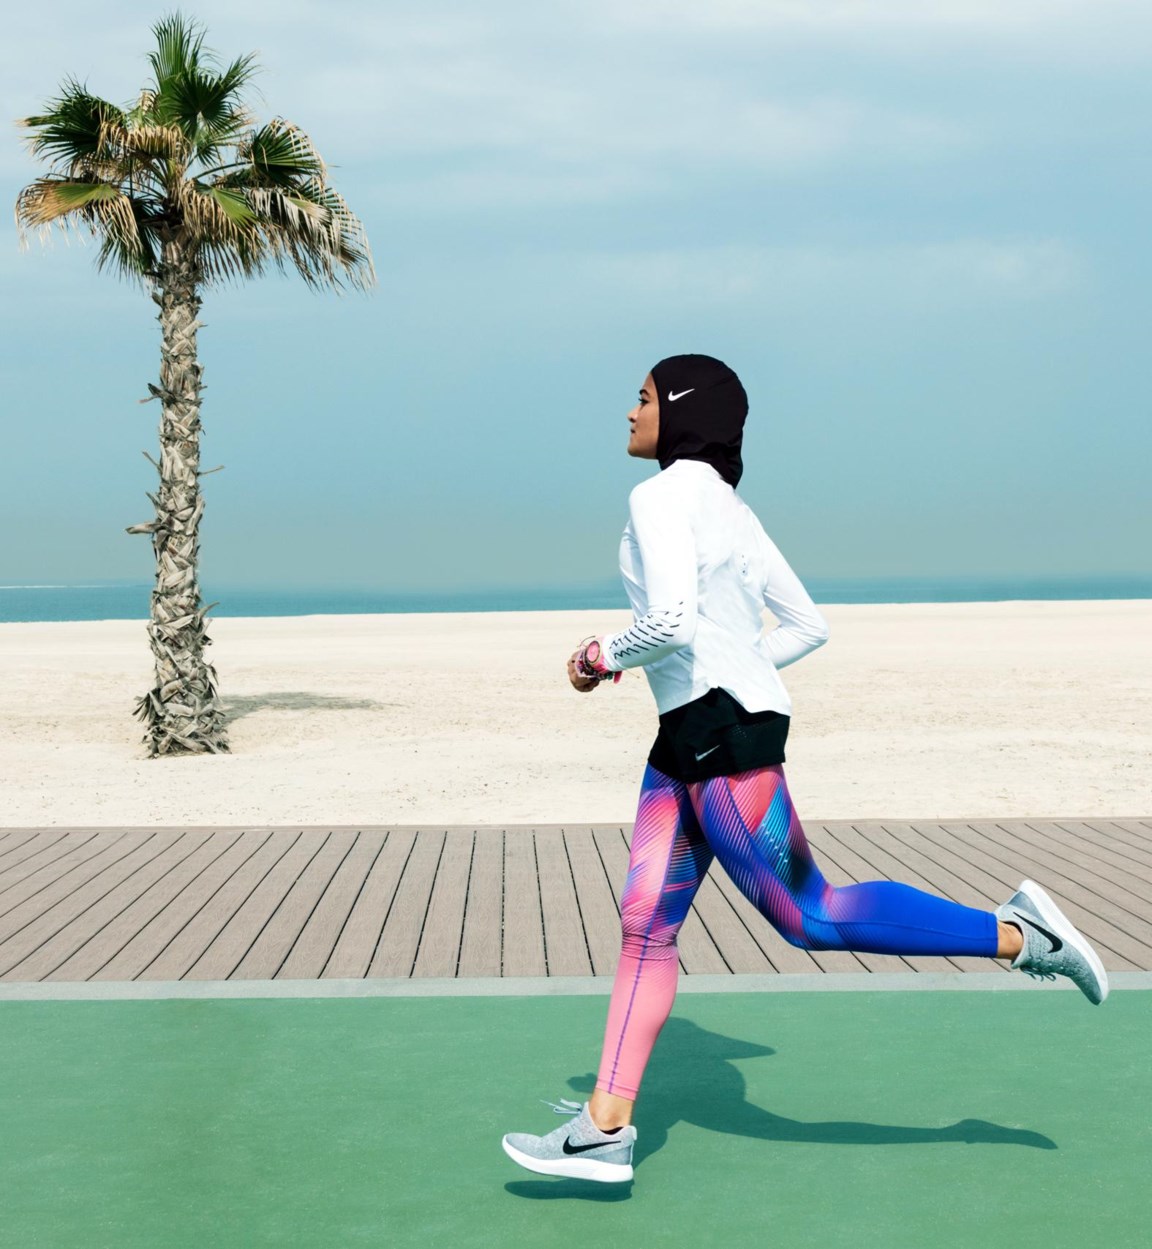 Matron Vriendelijkheid ijs Zelfs moslima's moeten sporthoofddoek van Nike niet | De Standaard Mobile